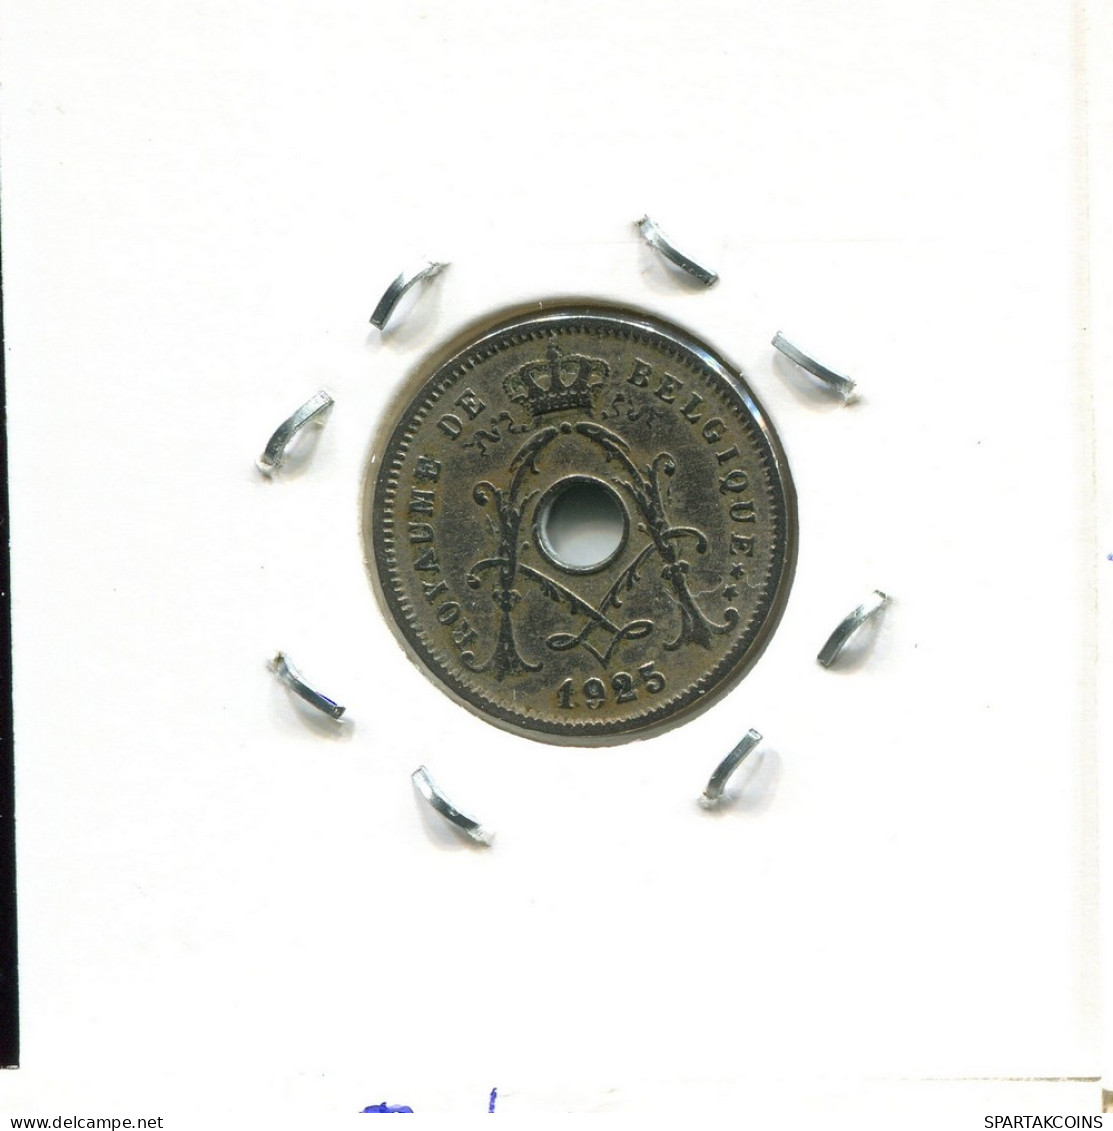 5 CENTIMES 1925 FRENCH Text BÉLGICA BELGIUM Moneda #BA258.E - 5 Cent